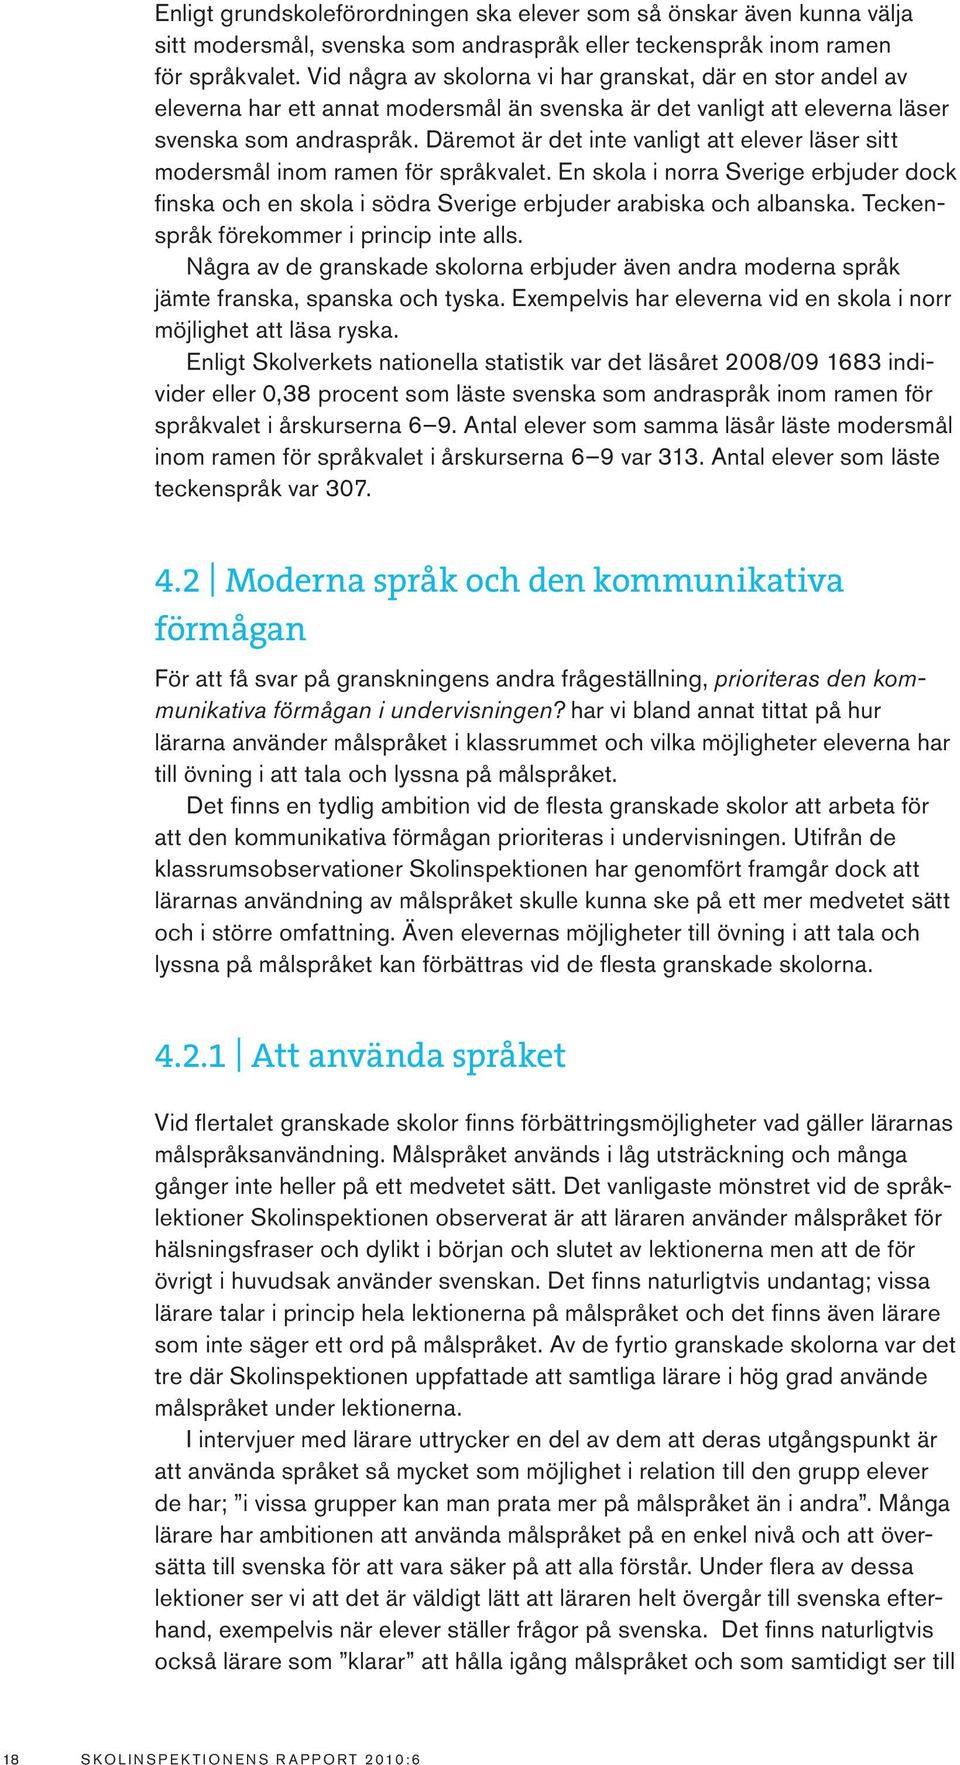 Däremot är det inte vanligt att elever läser sitt modersmål inom ramen för språkvalet. En skola i norra Sverige erbjuder dock finska och en skola i södra Sverige erbjuder arabiska och albanska.